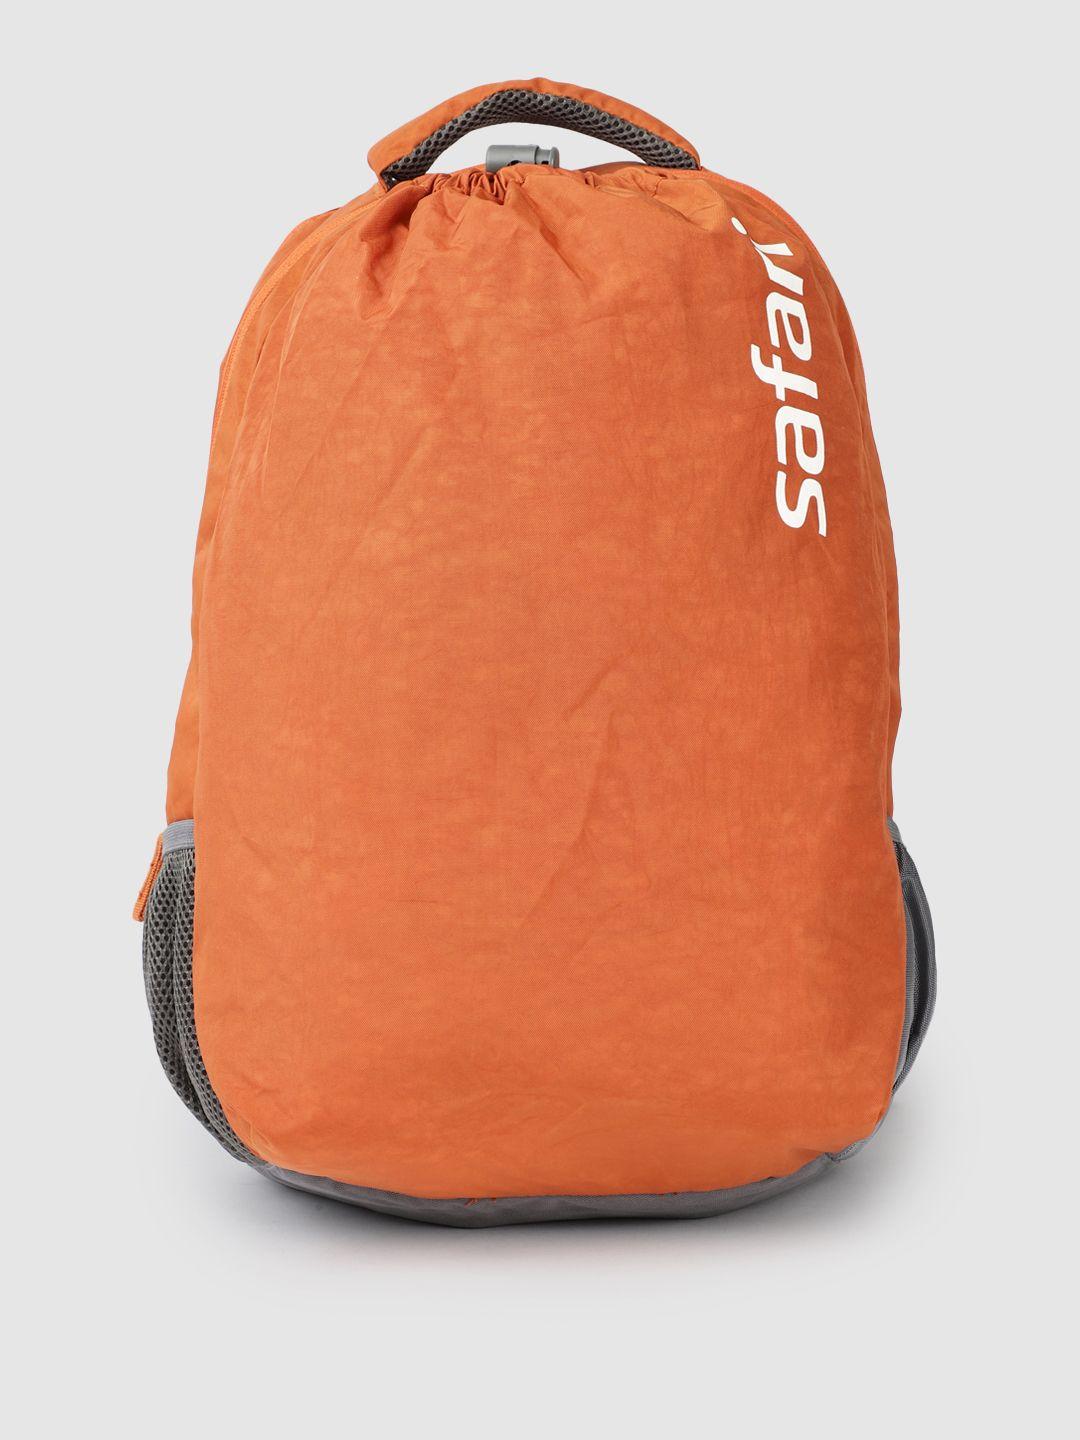 safari unisex brand logo backpack